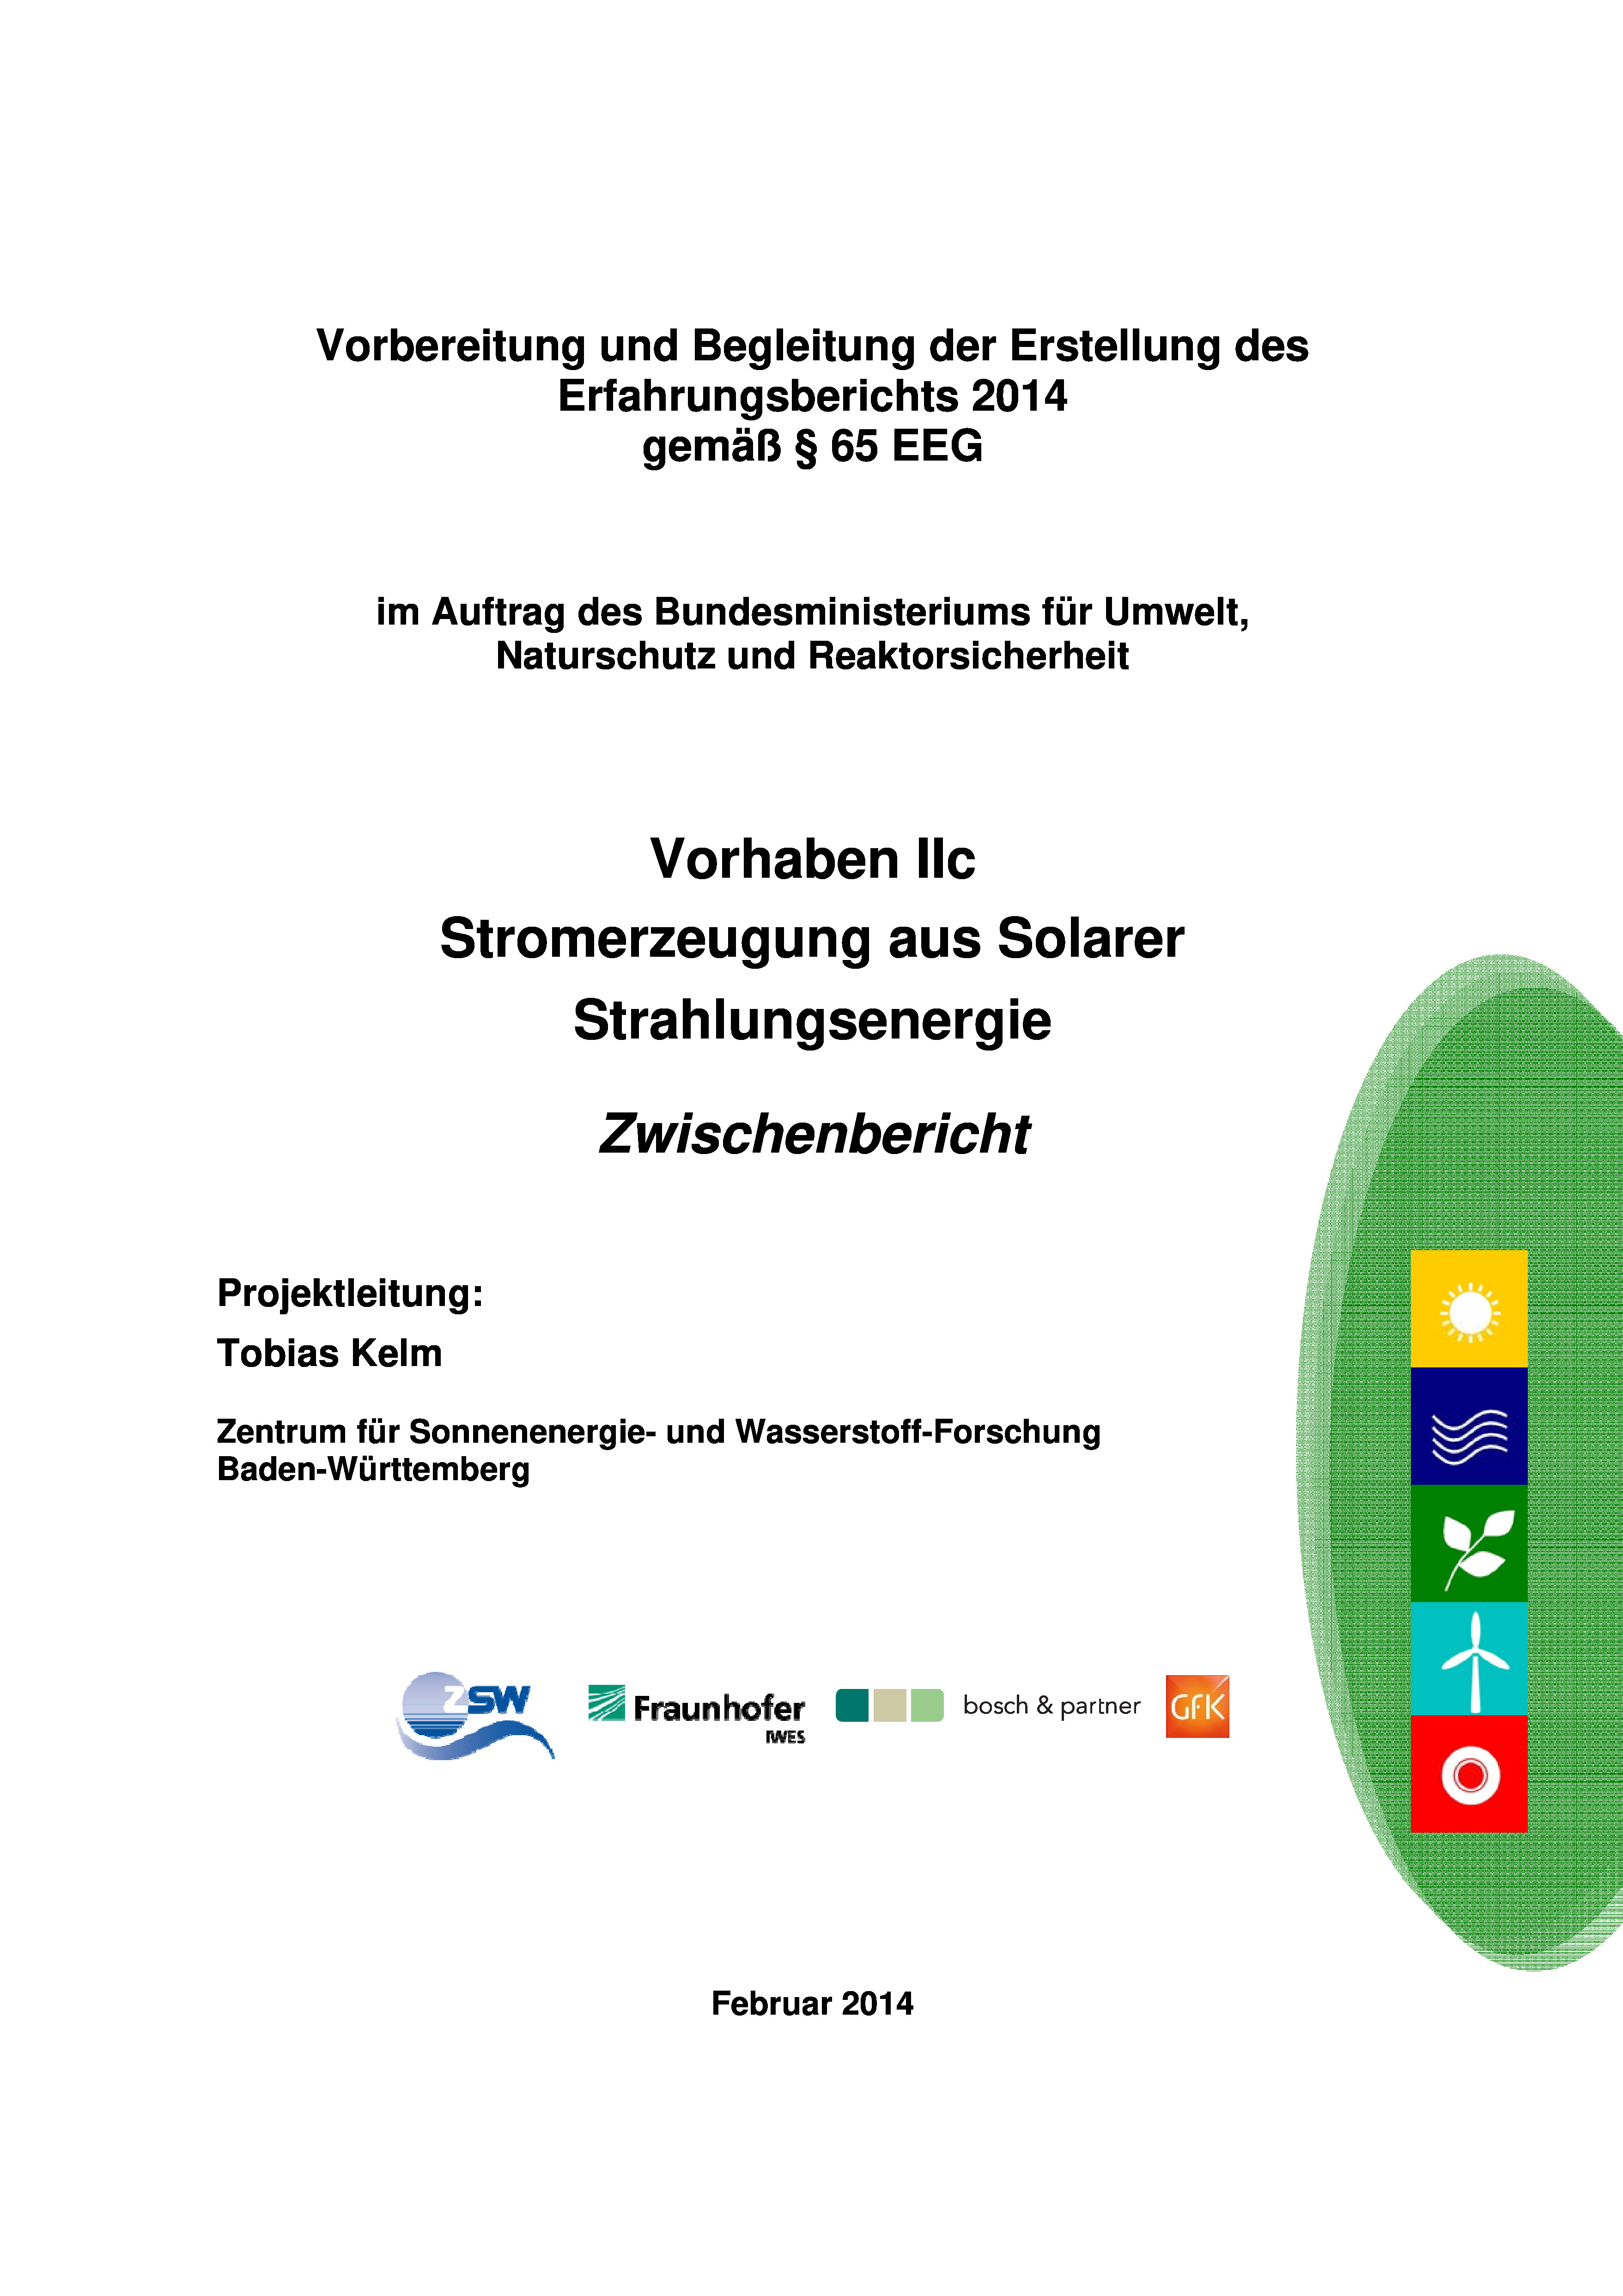 ZSW u.a.: Stromerzeugung aus Solarer Strahlungsenergie – Zwischenbericht